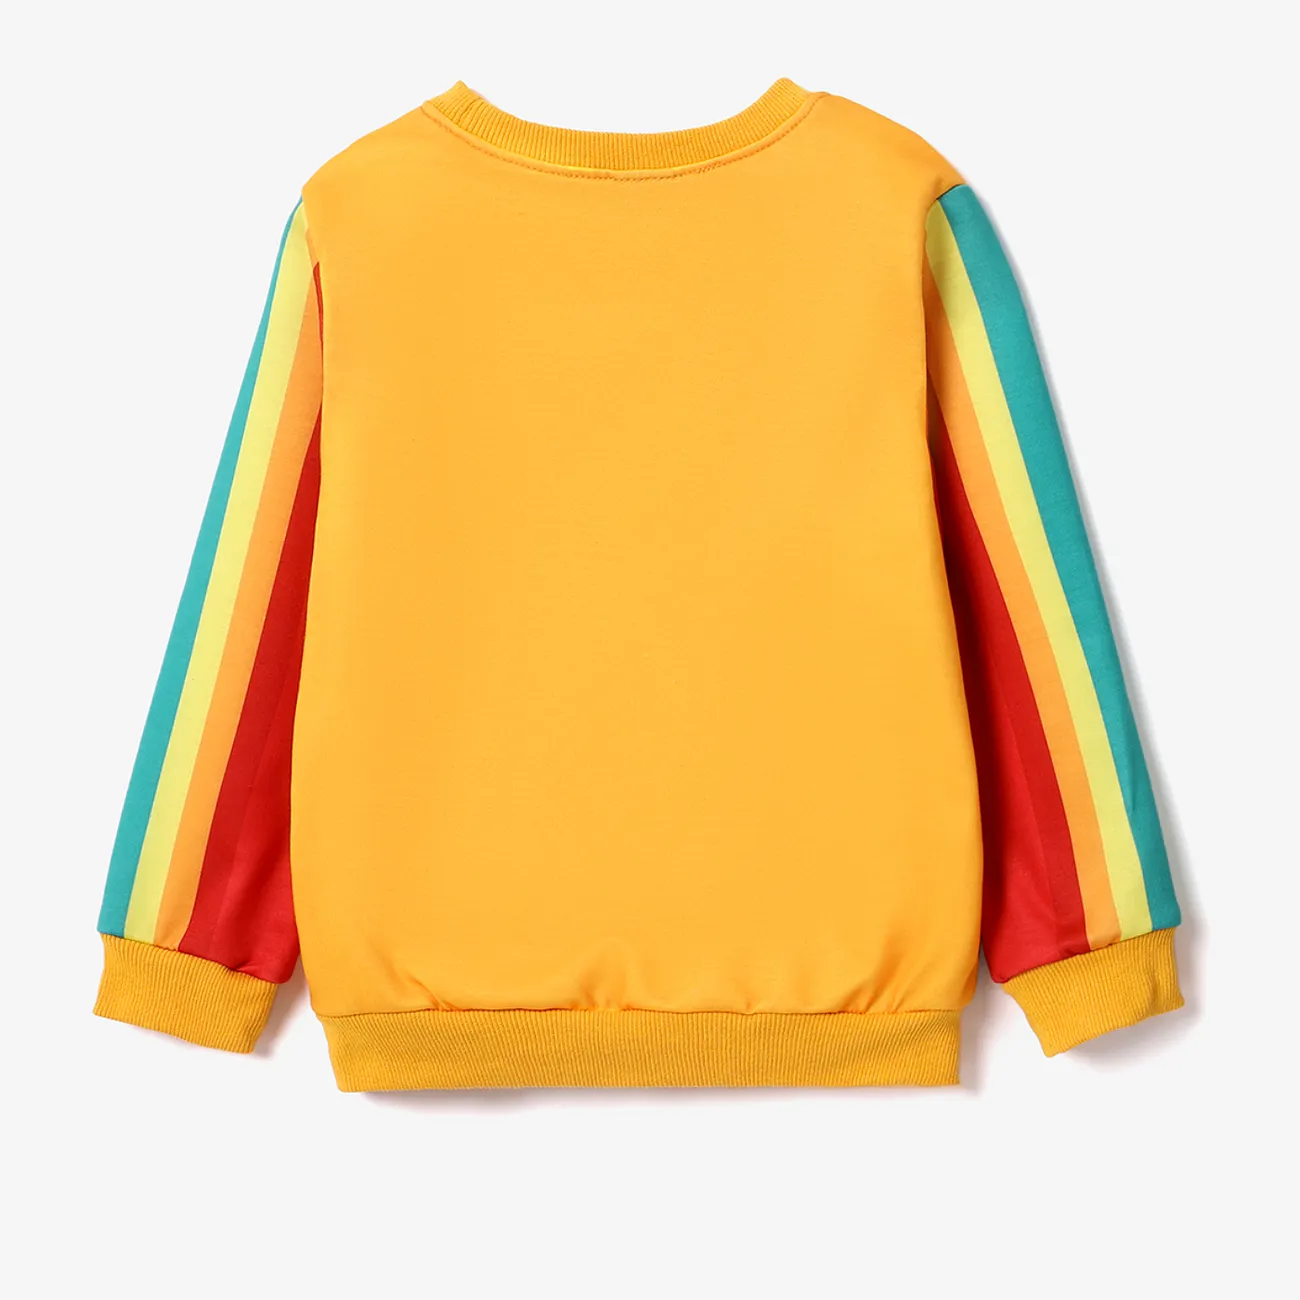 Tonka Kleinkinder Jungen Kindlich Sweatshirt-Sets gelb big image 1